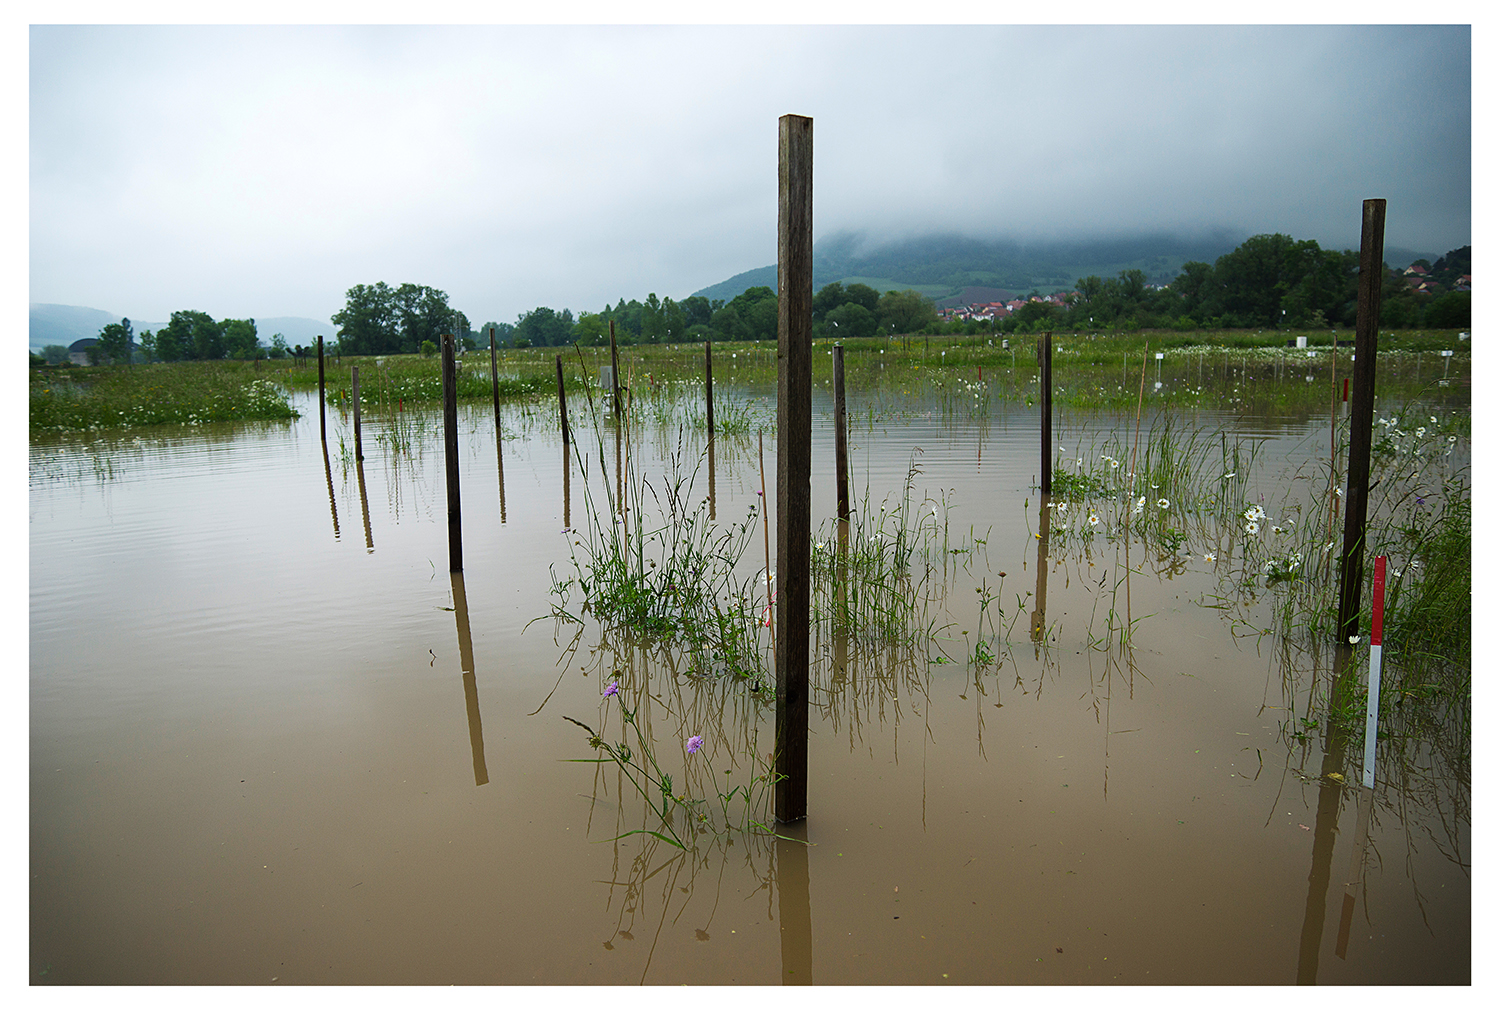 Die Flut 2013 zeigte den Wissenschaftlerinnen und Wissenschaftlern des Jena Experiments, dass artenreiches Grasland von Überschwemmungen profitieren kann.